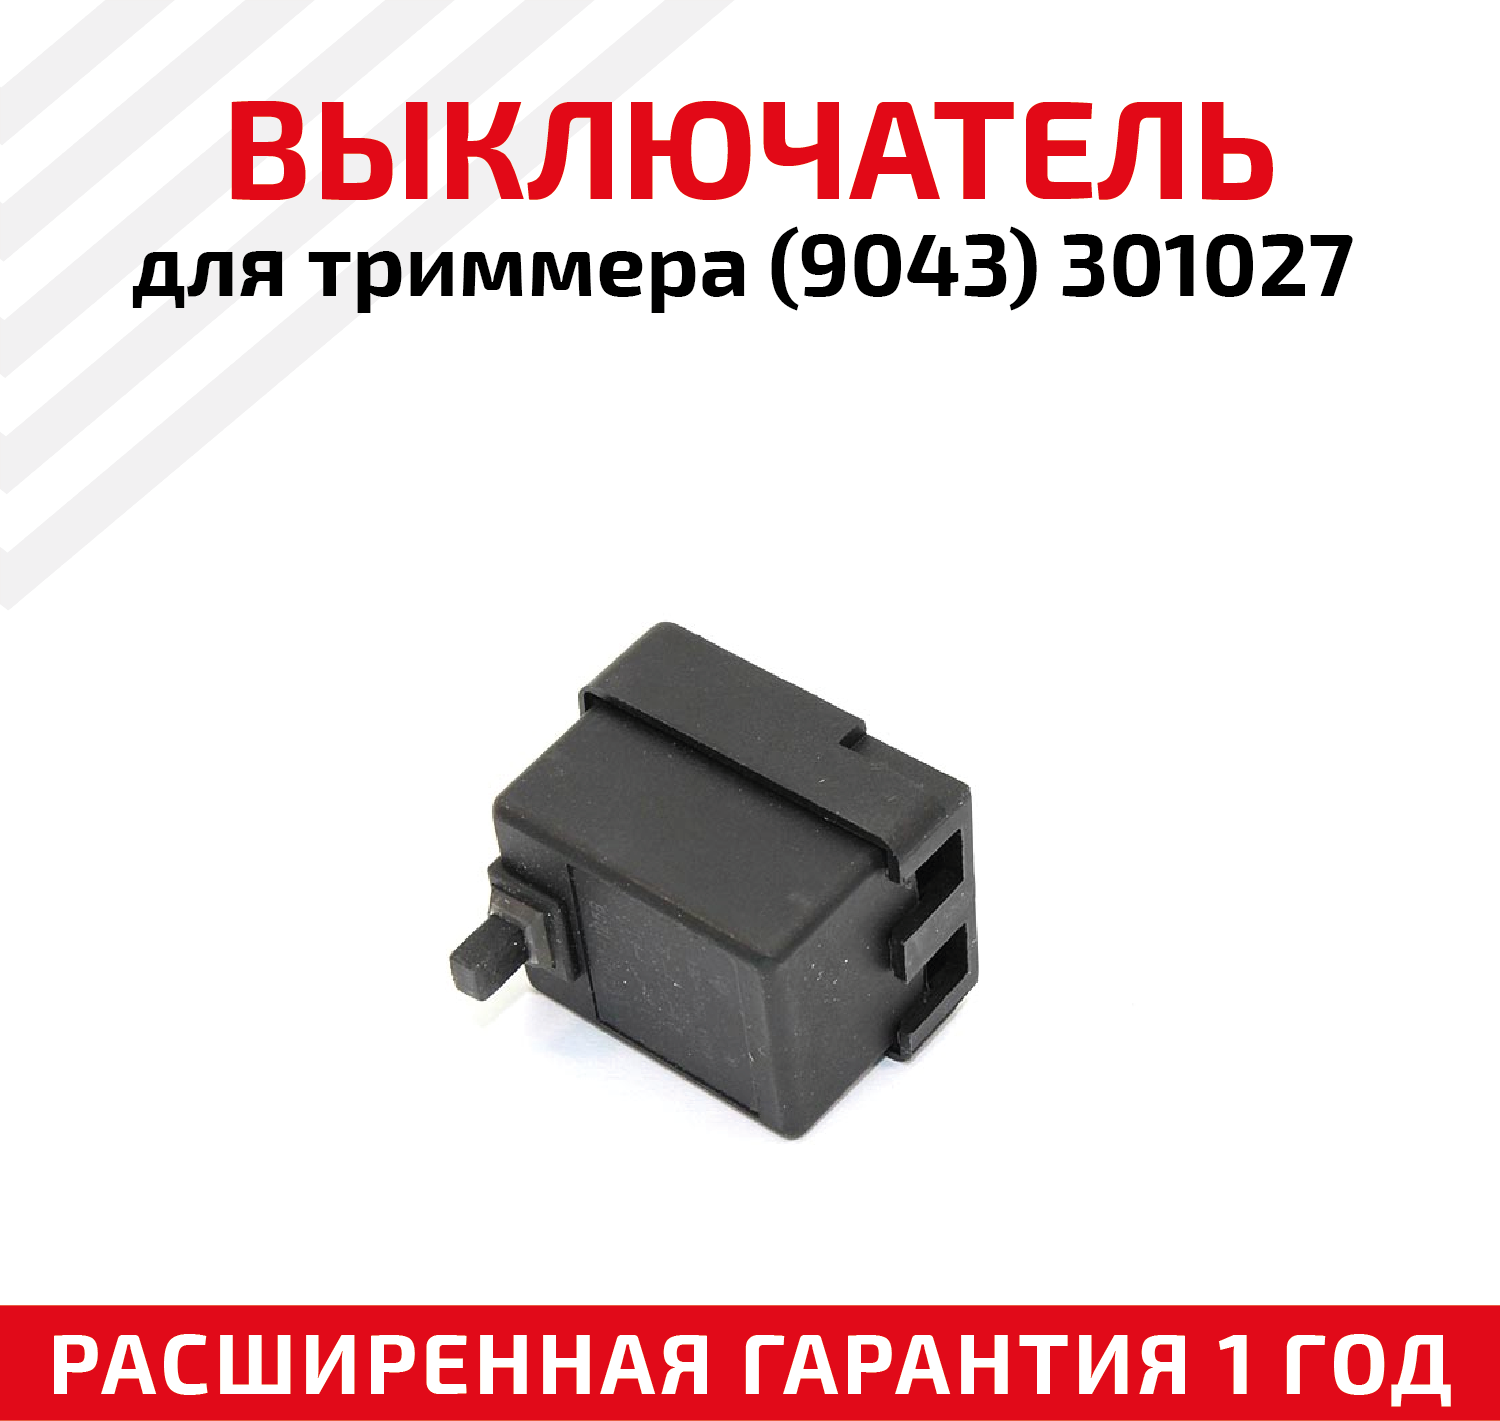 Выключатель для триммера (9043) 301027